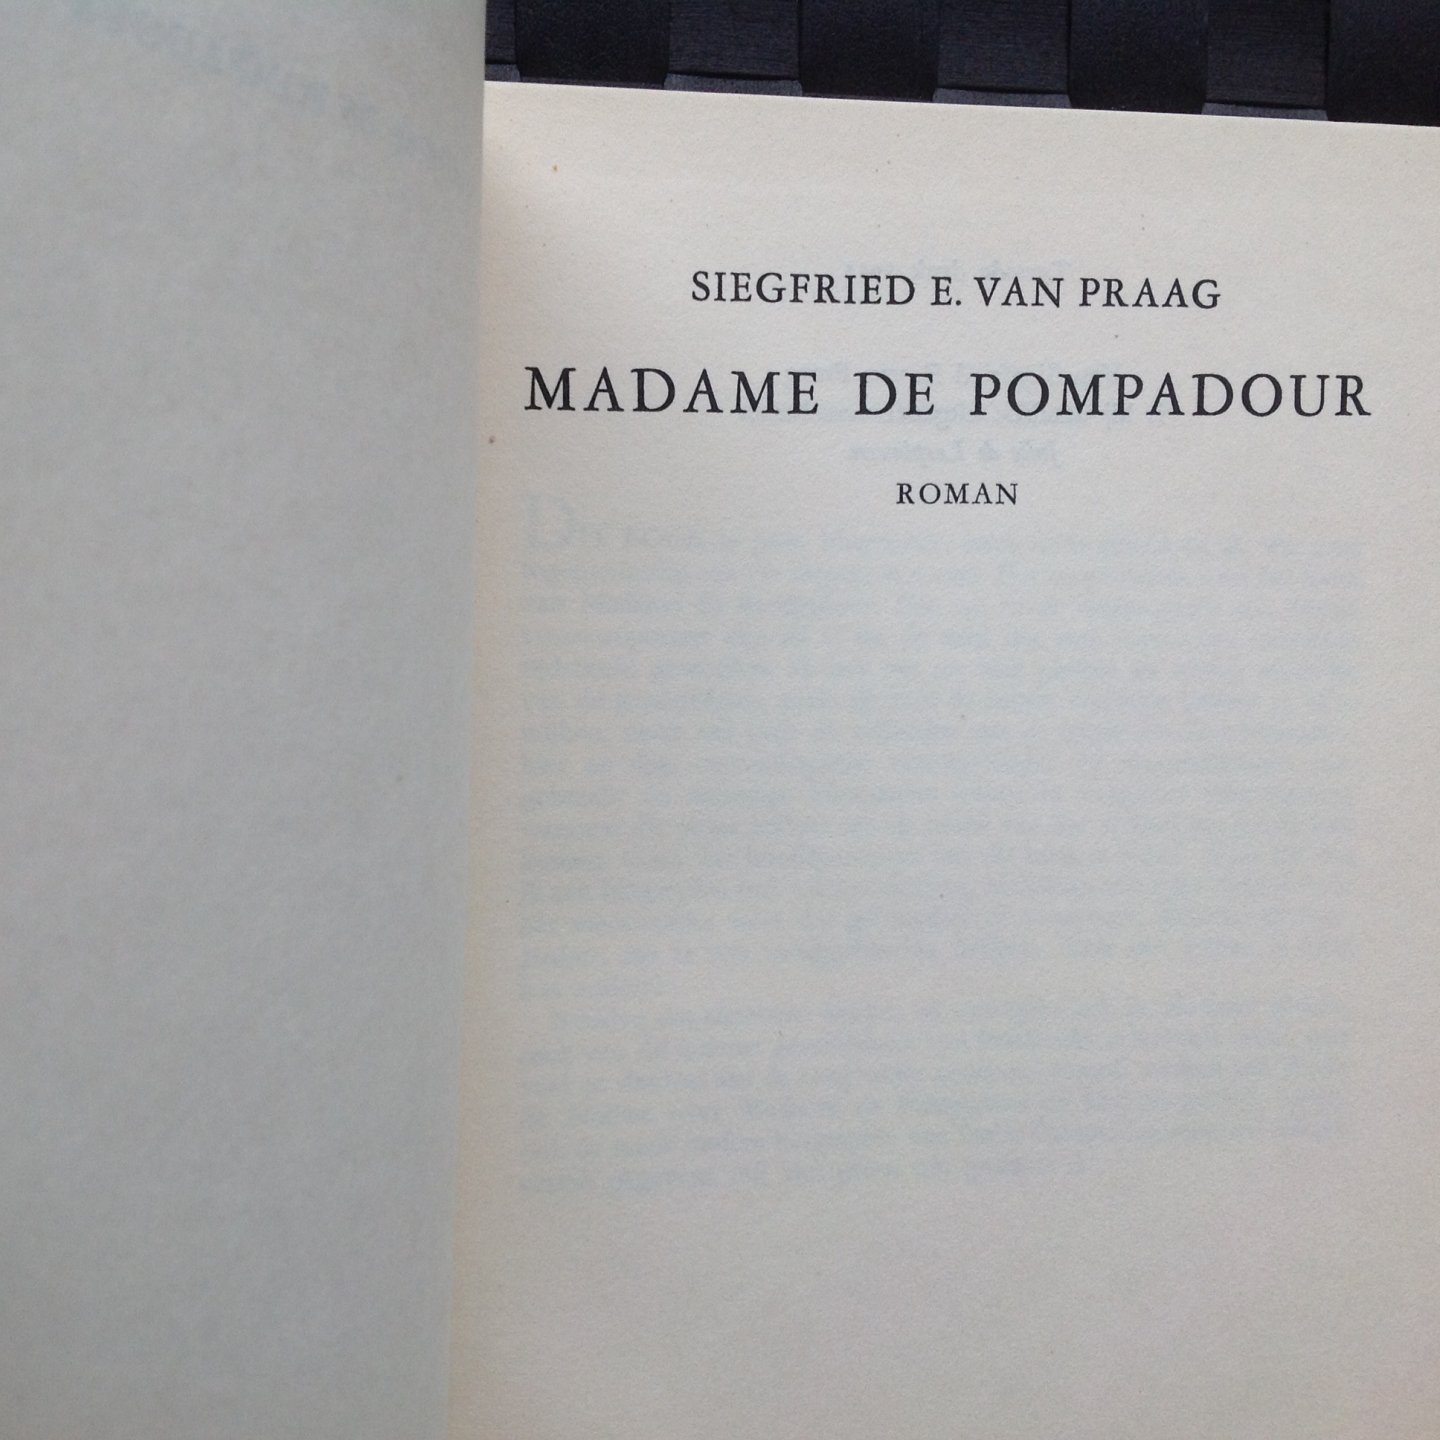 siegfried e van praag - Madame de Pompadour